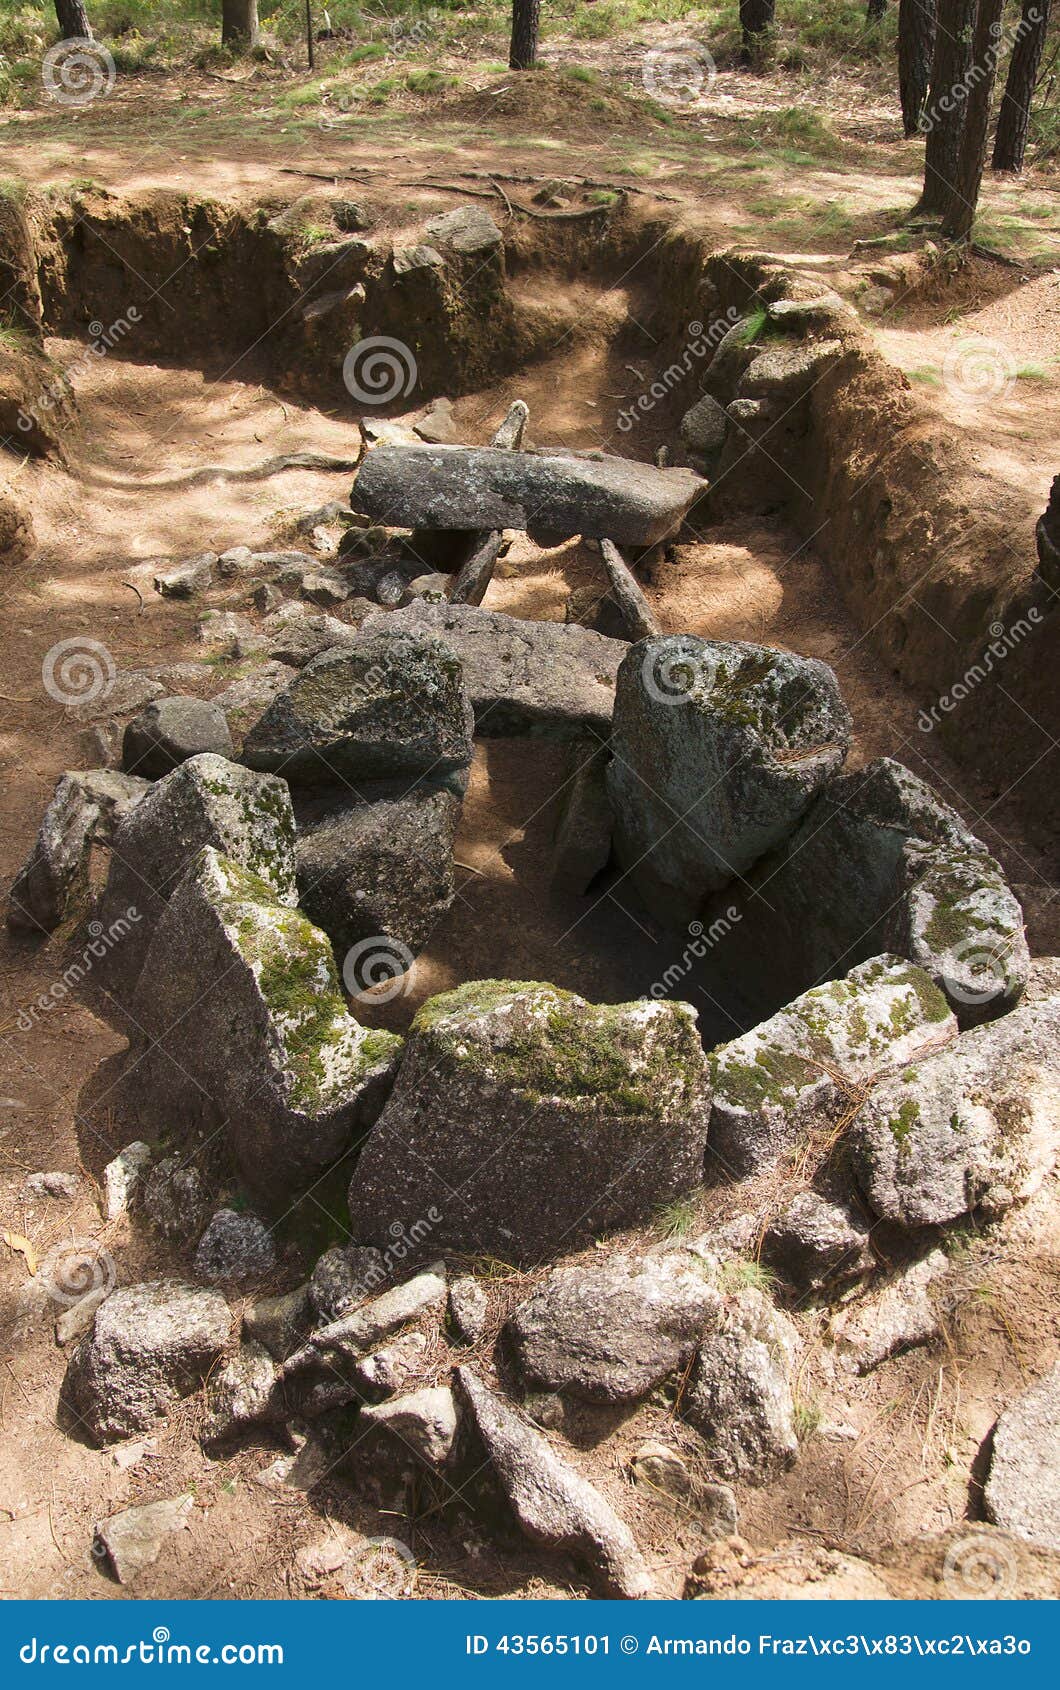 dolmen do rapido back view. esposende, portugal